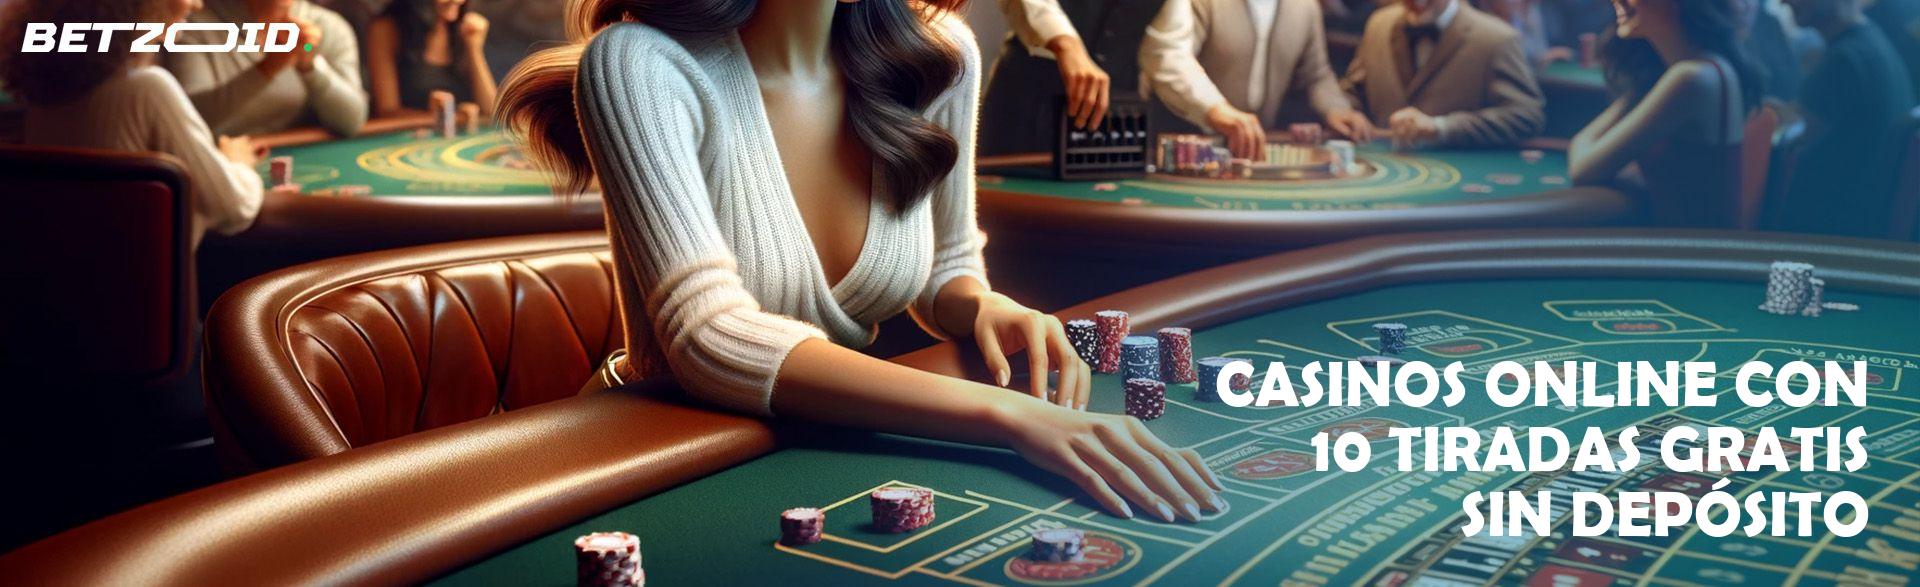 Casinos Online con 10 Tiradas Gratis sin Depósito.